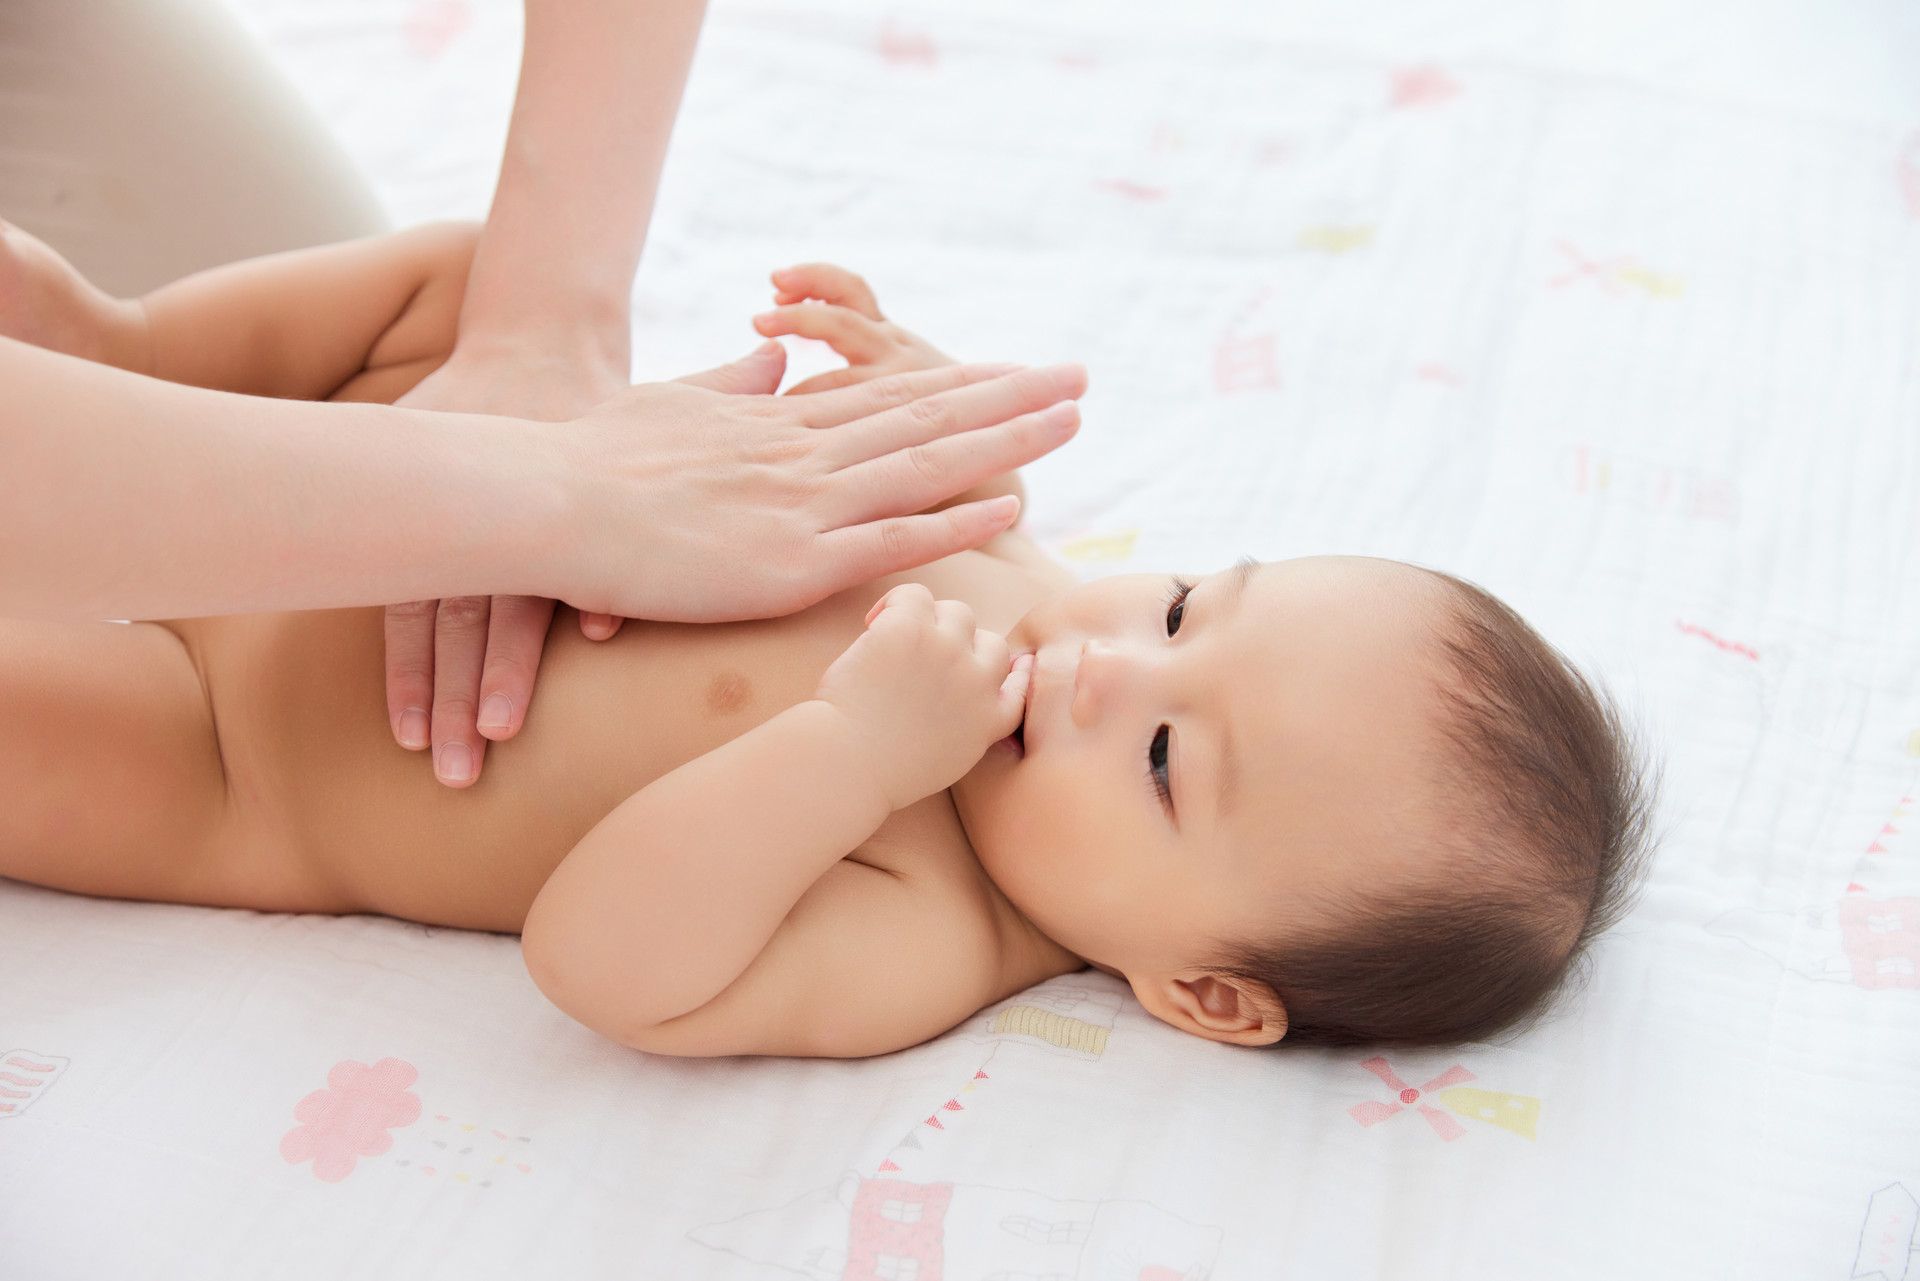 中国卫生部批准的适合婴幼儿食用的7种益生菌有哪些